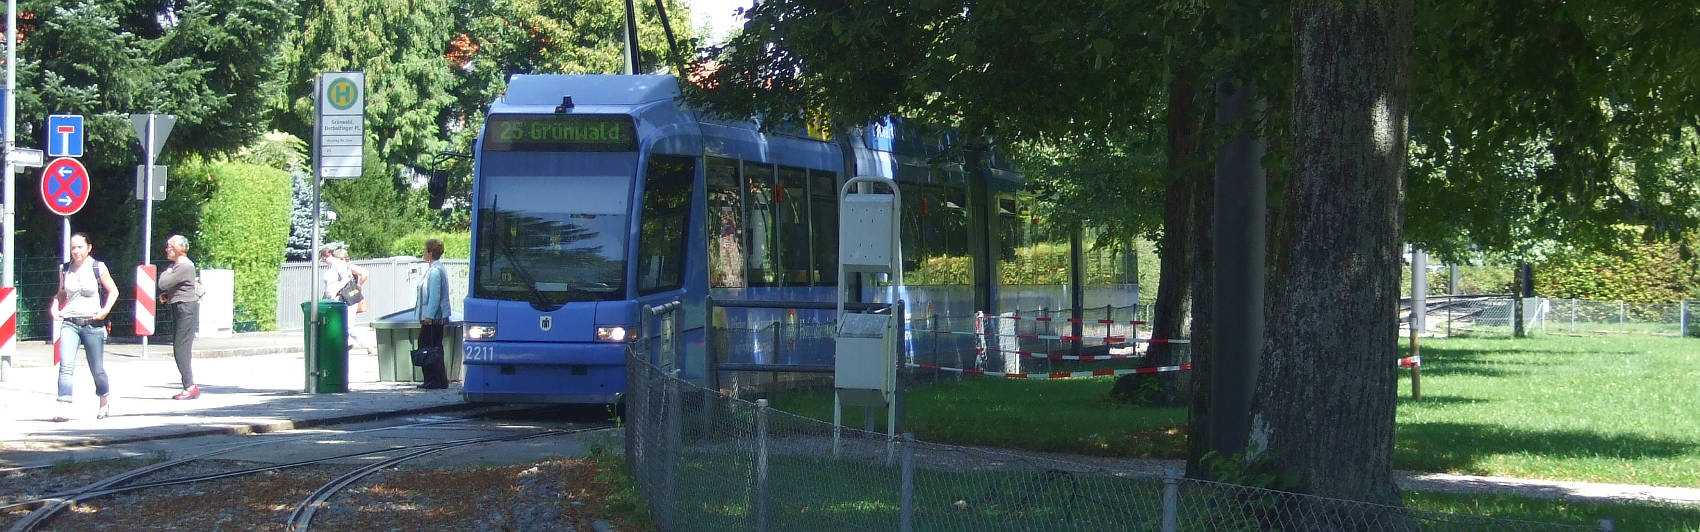 Fahrplanauskunft / Anfahrtsinformationen im Landkreis München